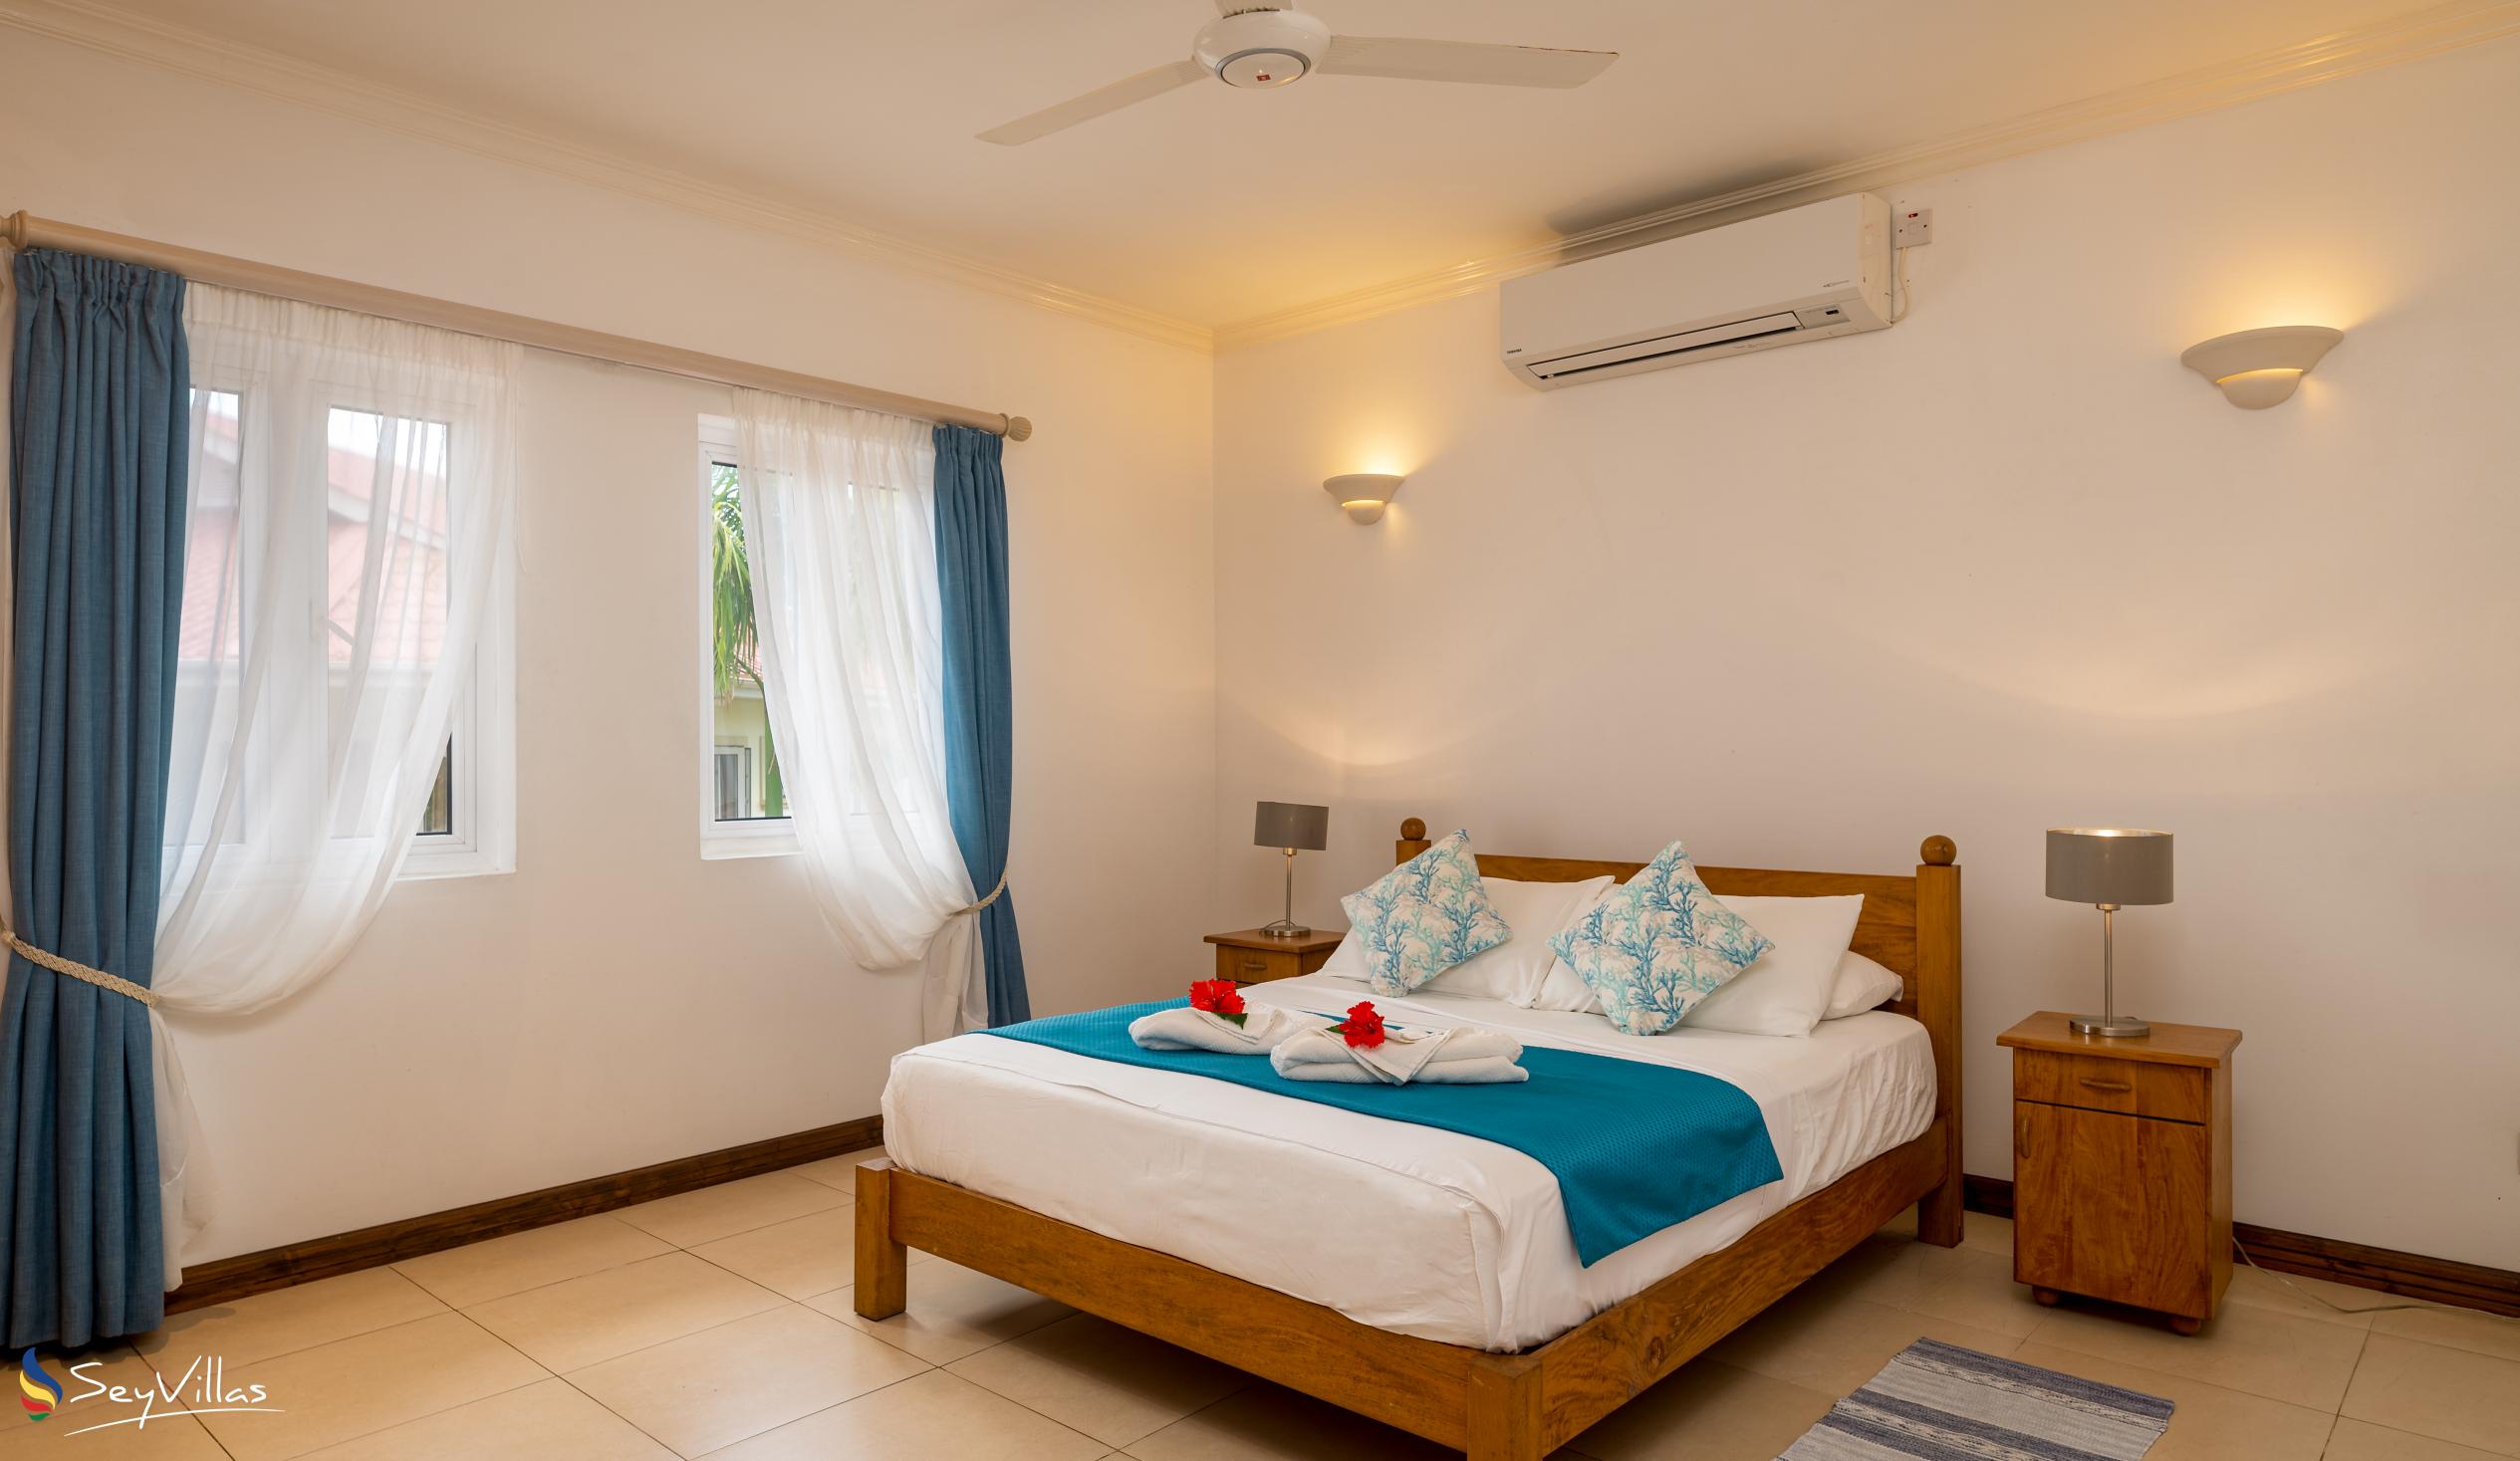 Photo 112: Marie-Laure Suites - 2-Bedroom Apartment - Mahé (Seychelles)